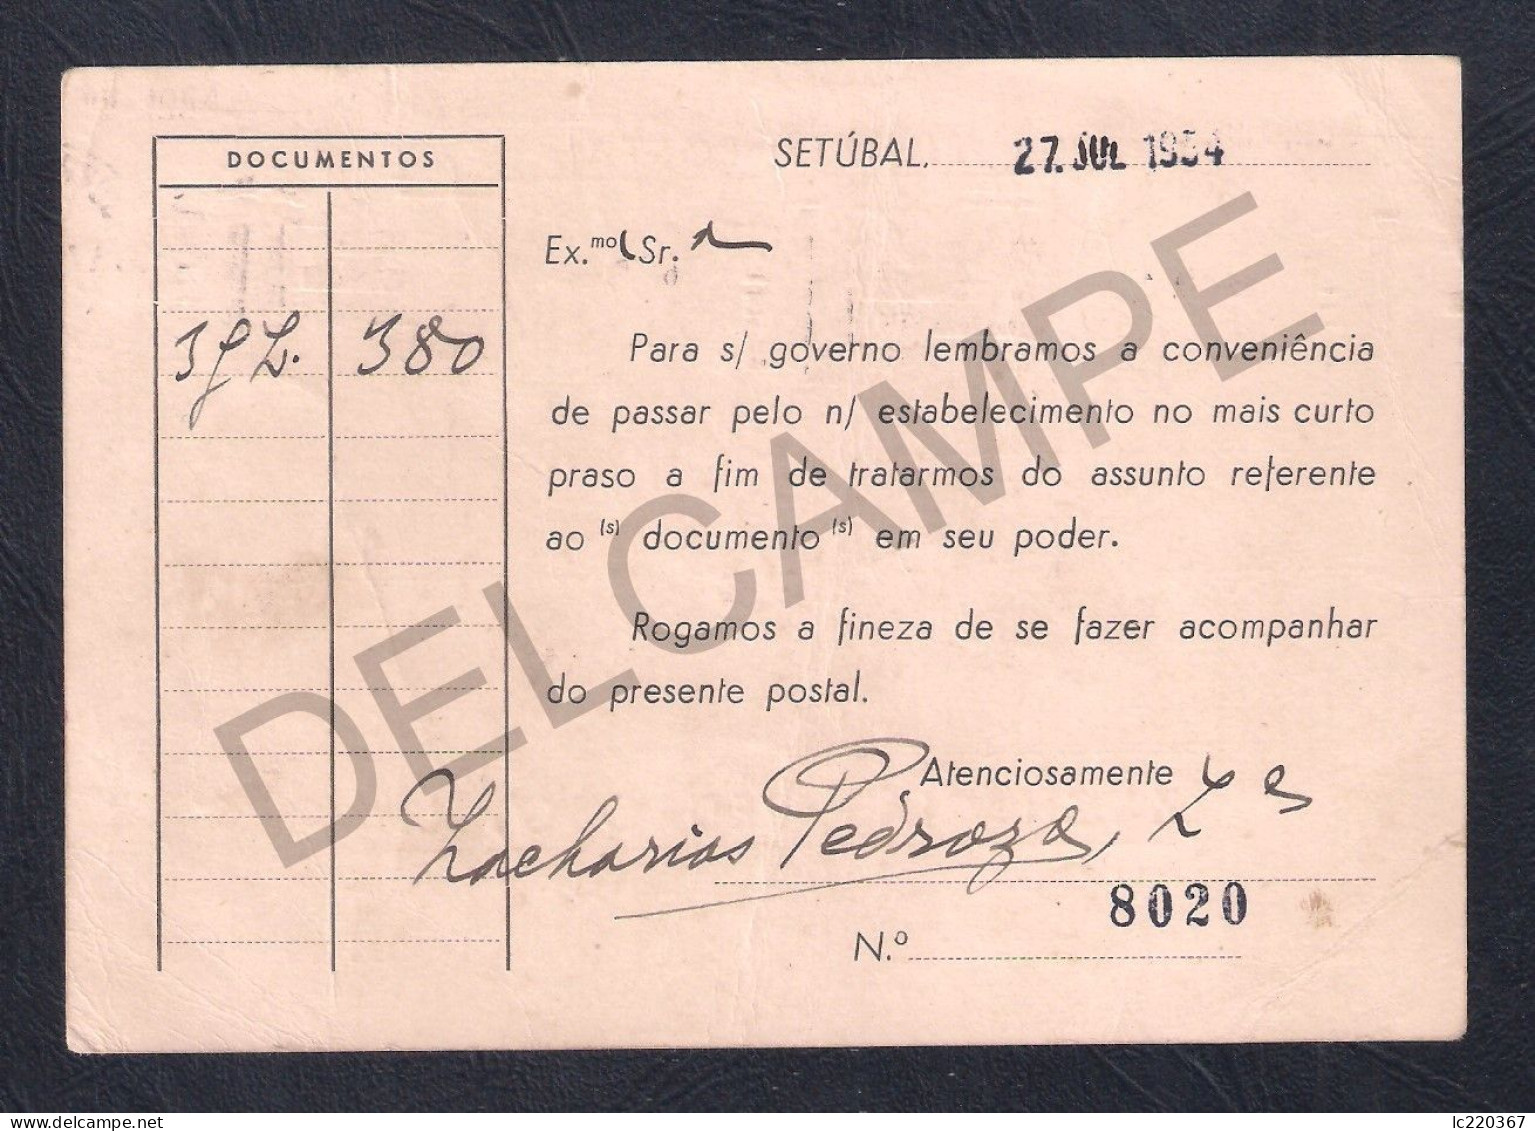 POSTCARD BILHETE POSTAL PORTUGAL SETUBAL AVISO DE COBRANÇA DA FIRMA ZACHARIAS PEDROSO LDA. - CIRCULADO 1954 - Setúbal